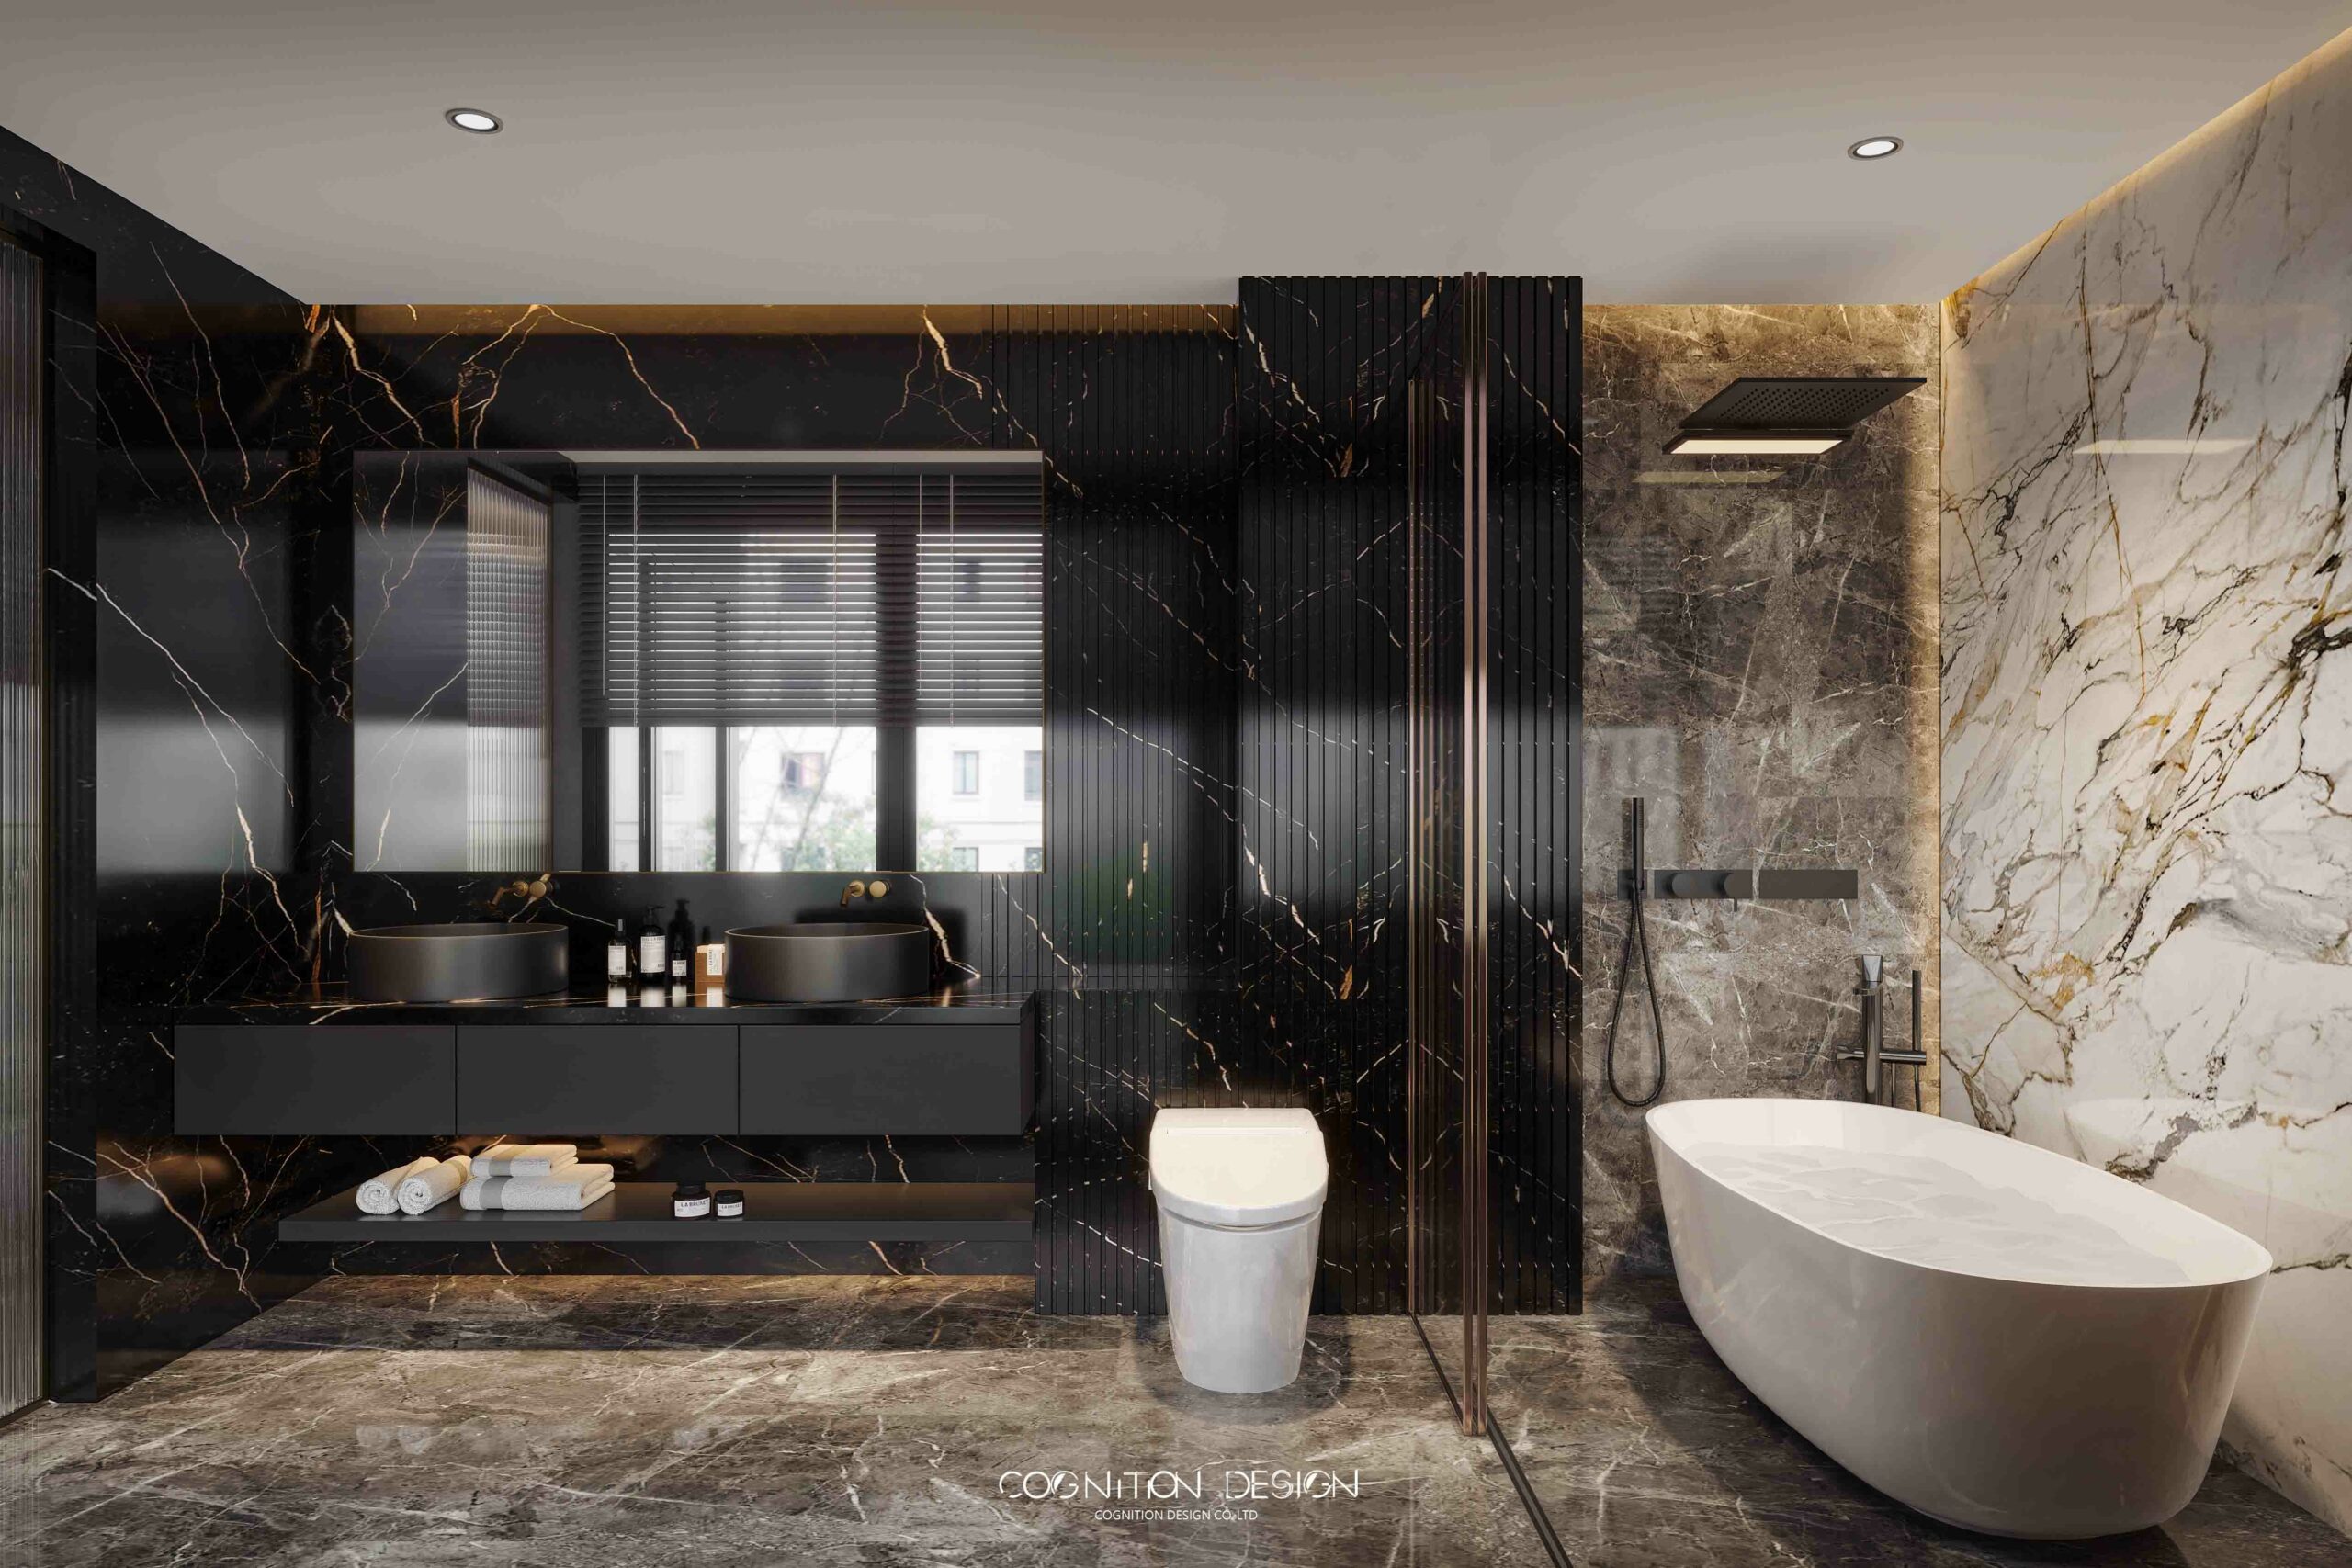 衛浴空間明確的乾濕分離，室內設計師運用三種顏色大理石牆面，調和整體空間協調性